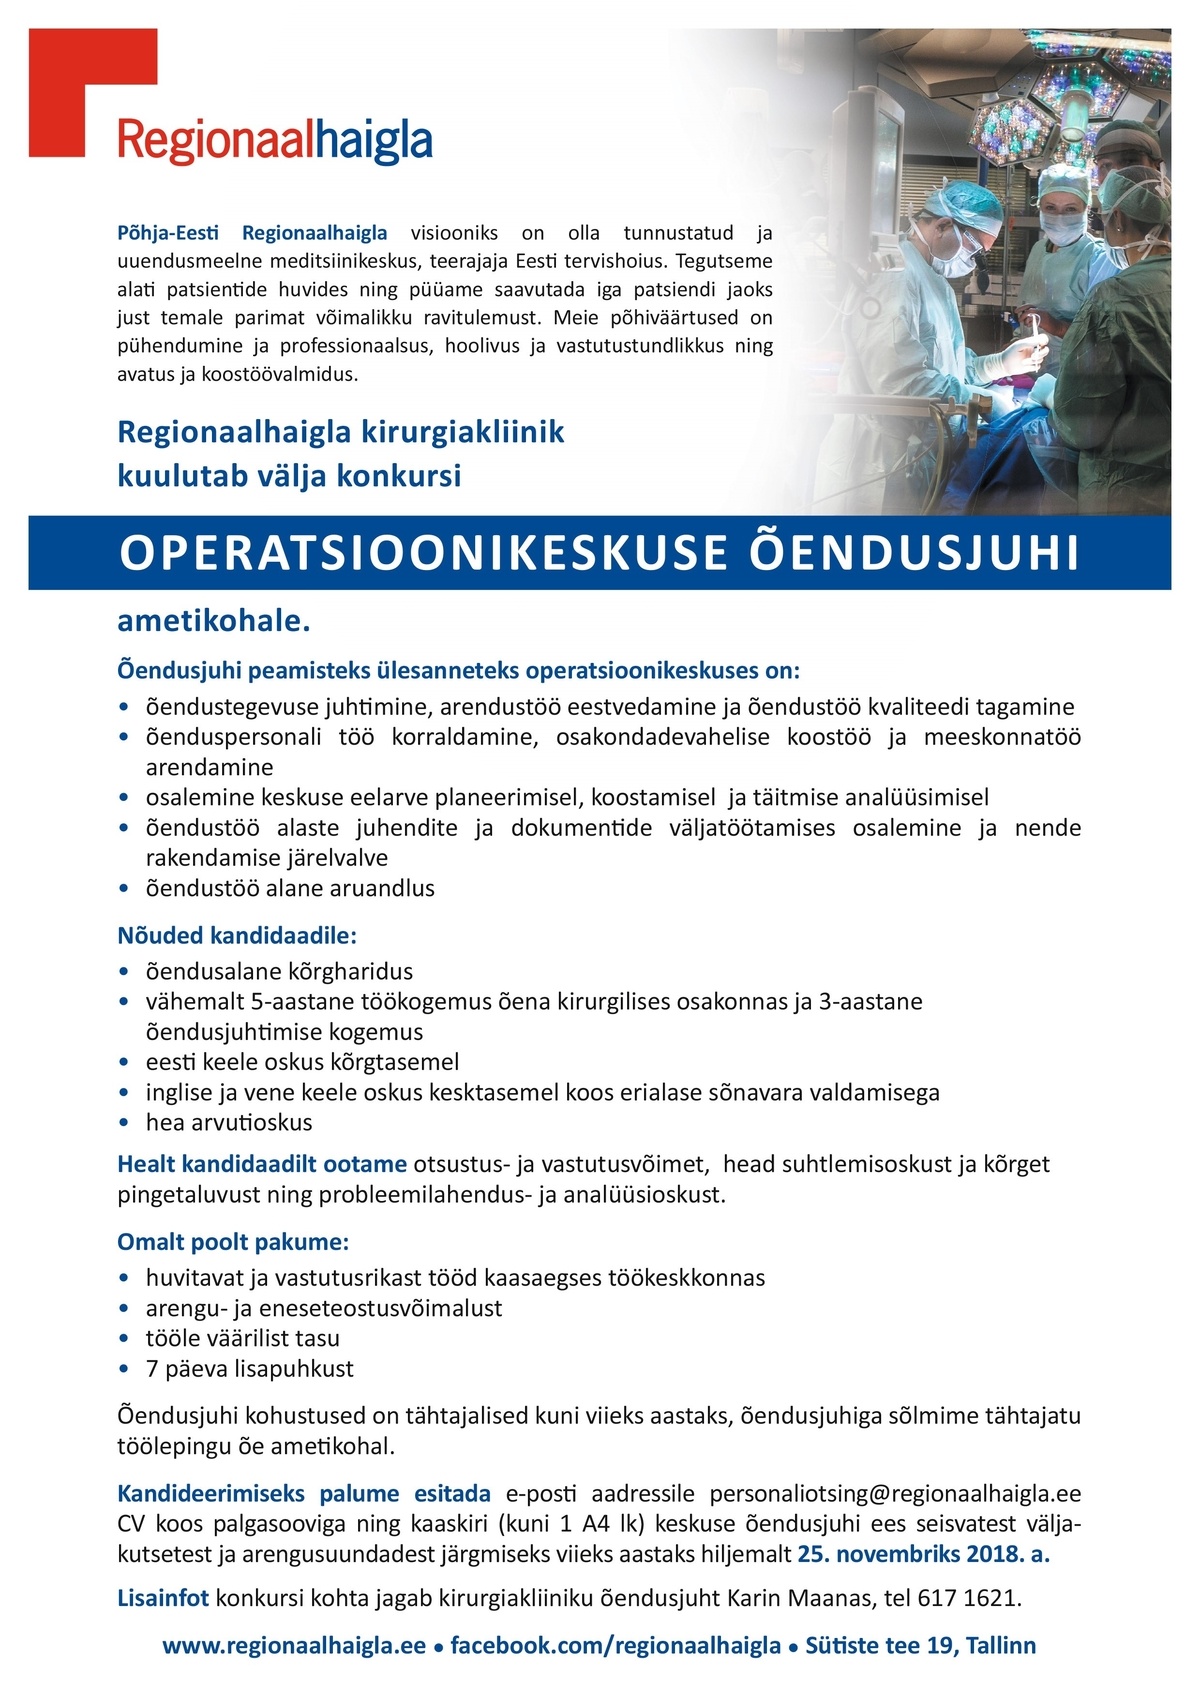 Põhja-Eesti Regionaalhaigla SA Operatsioonikeskuse õendusjuht